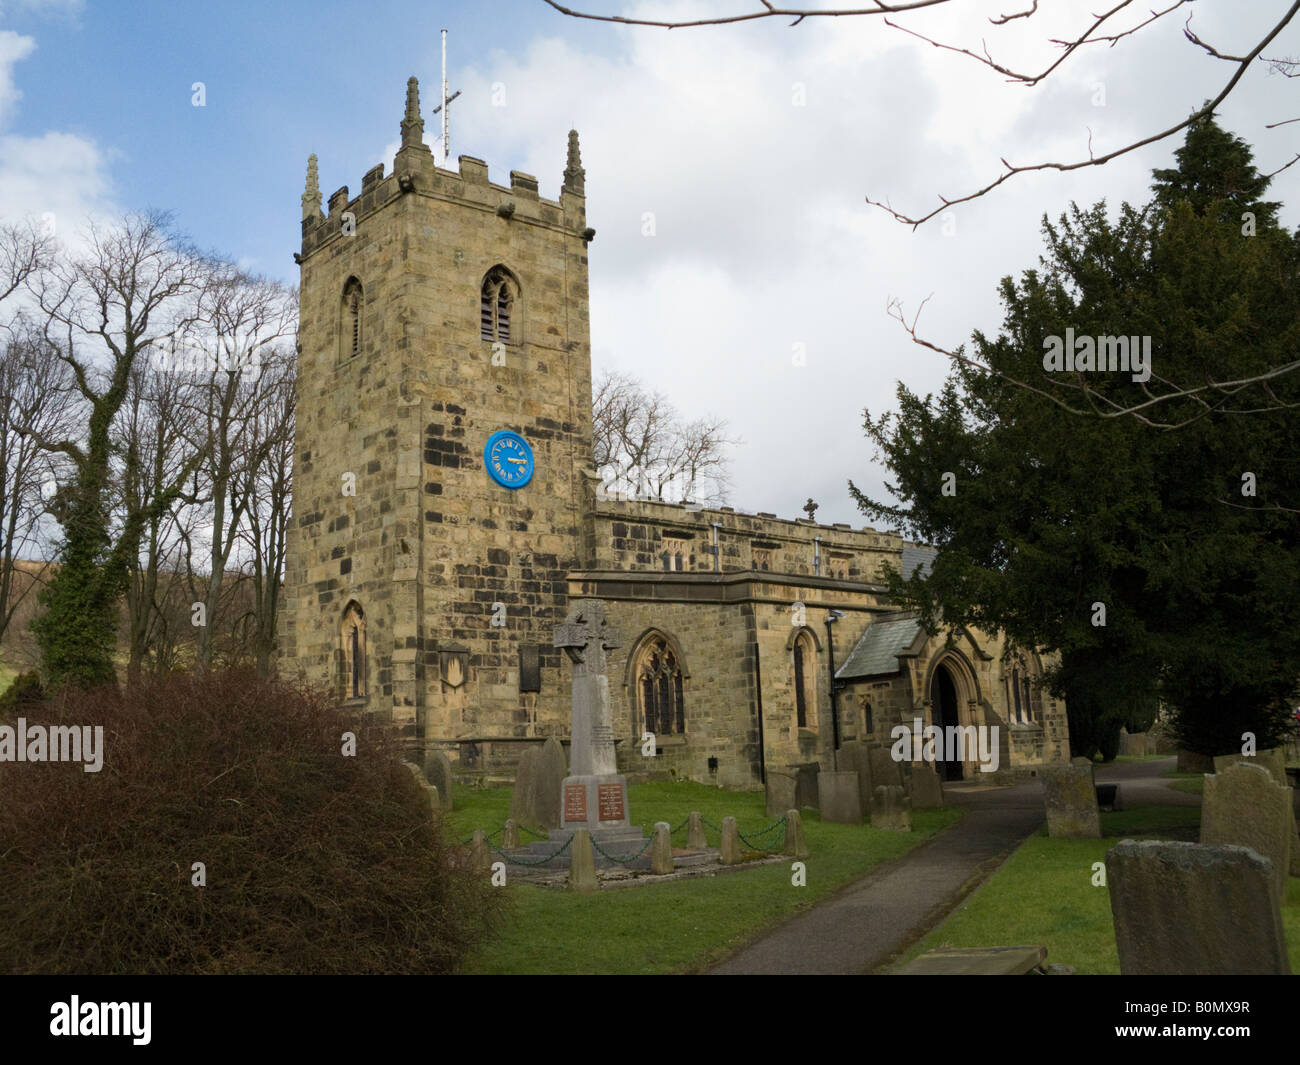 St Lawrence Parish church at Eyam, Derbyshire. England. UK Stock Photo